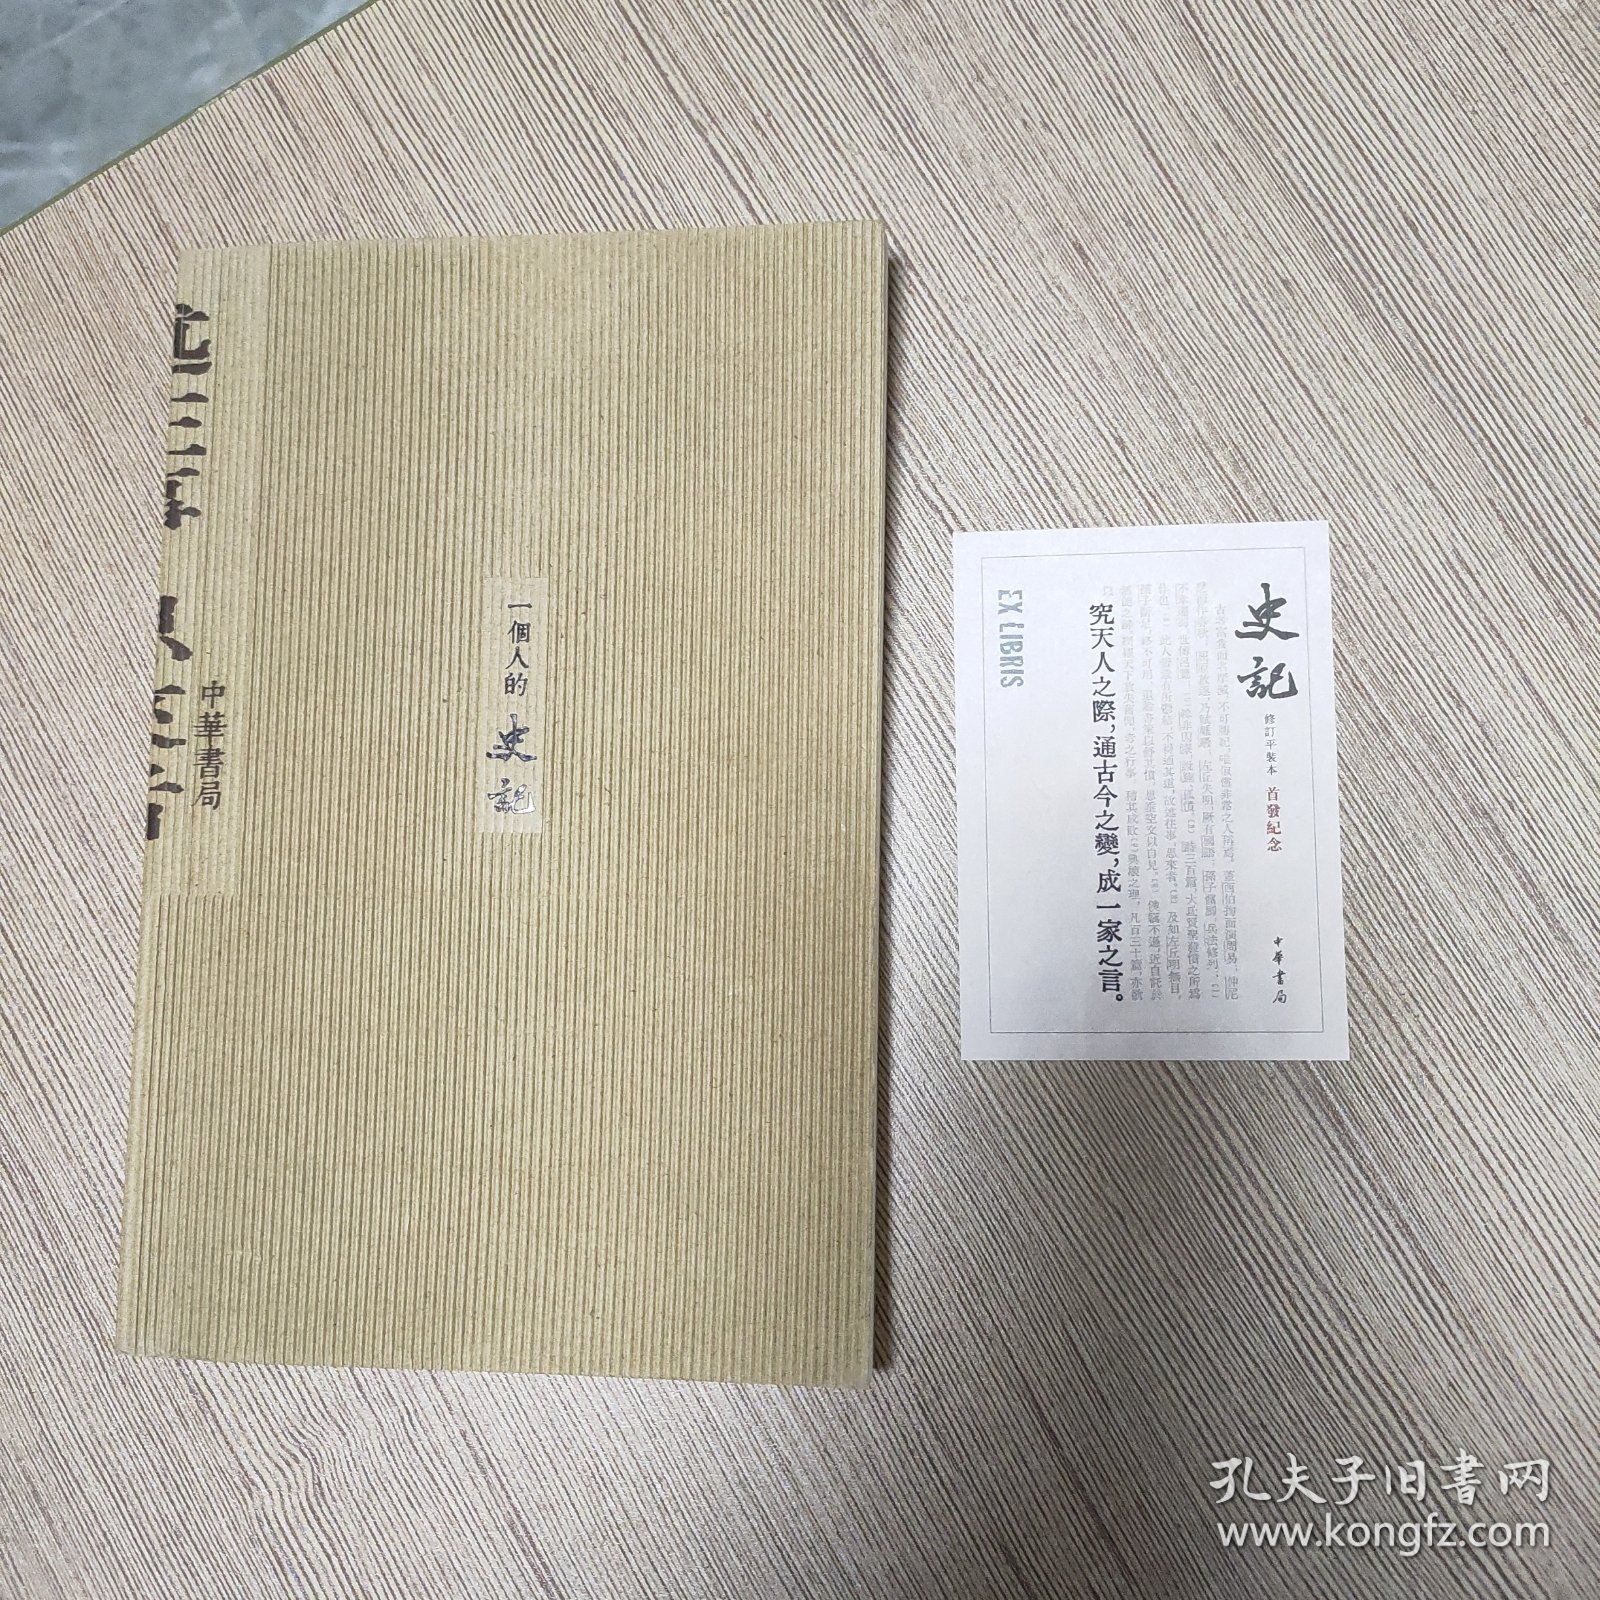 中华书局史记修订平装本首发纪念藏书票+《一个人的史记》笔记本，合售